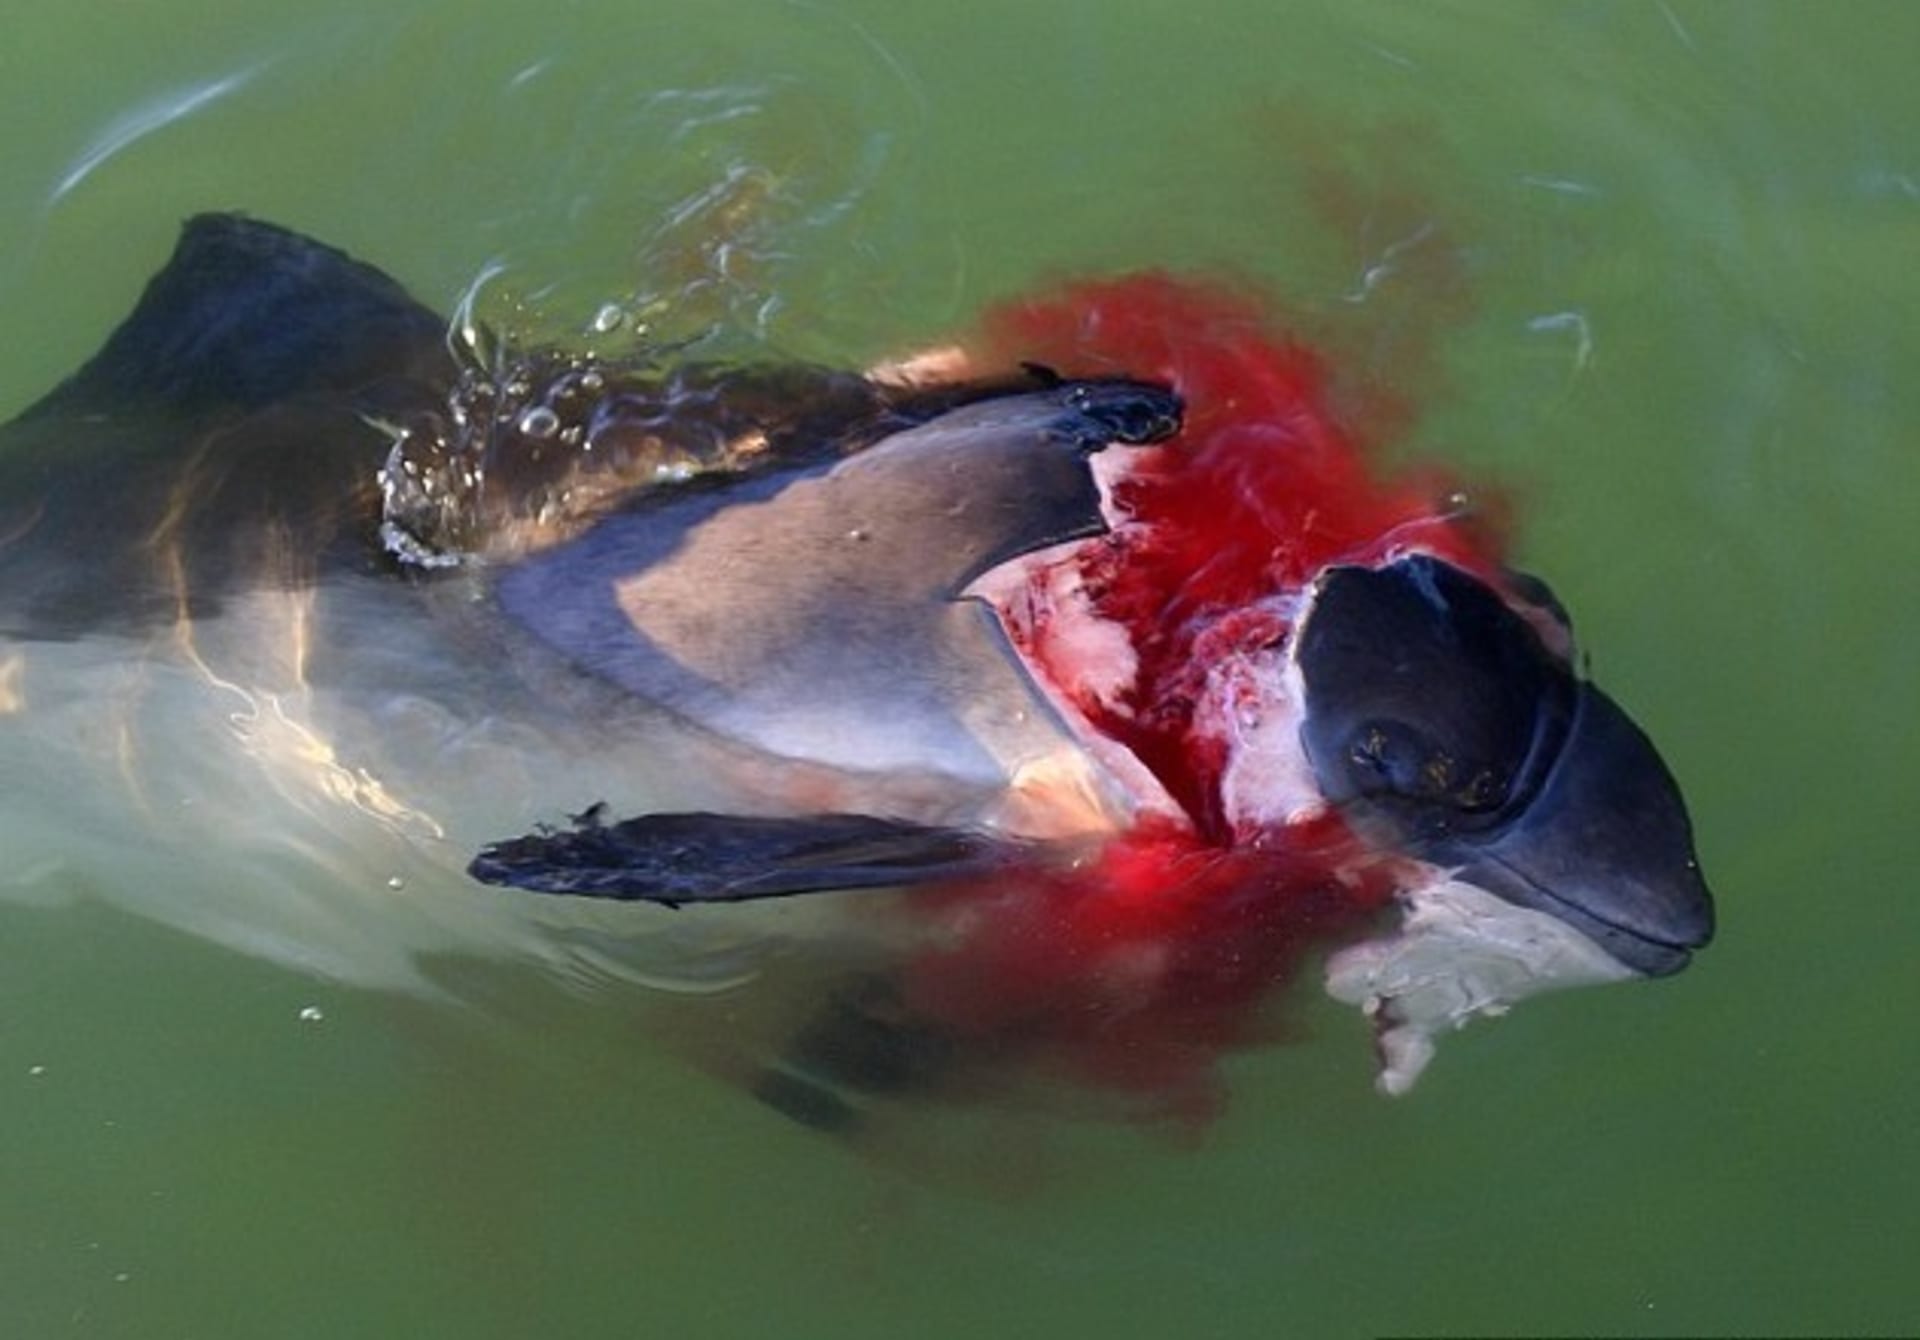 Sviňucha zabitá tuleněm